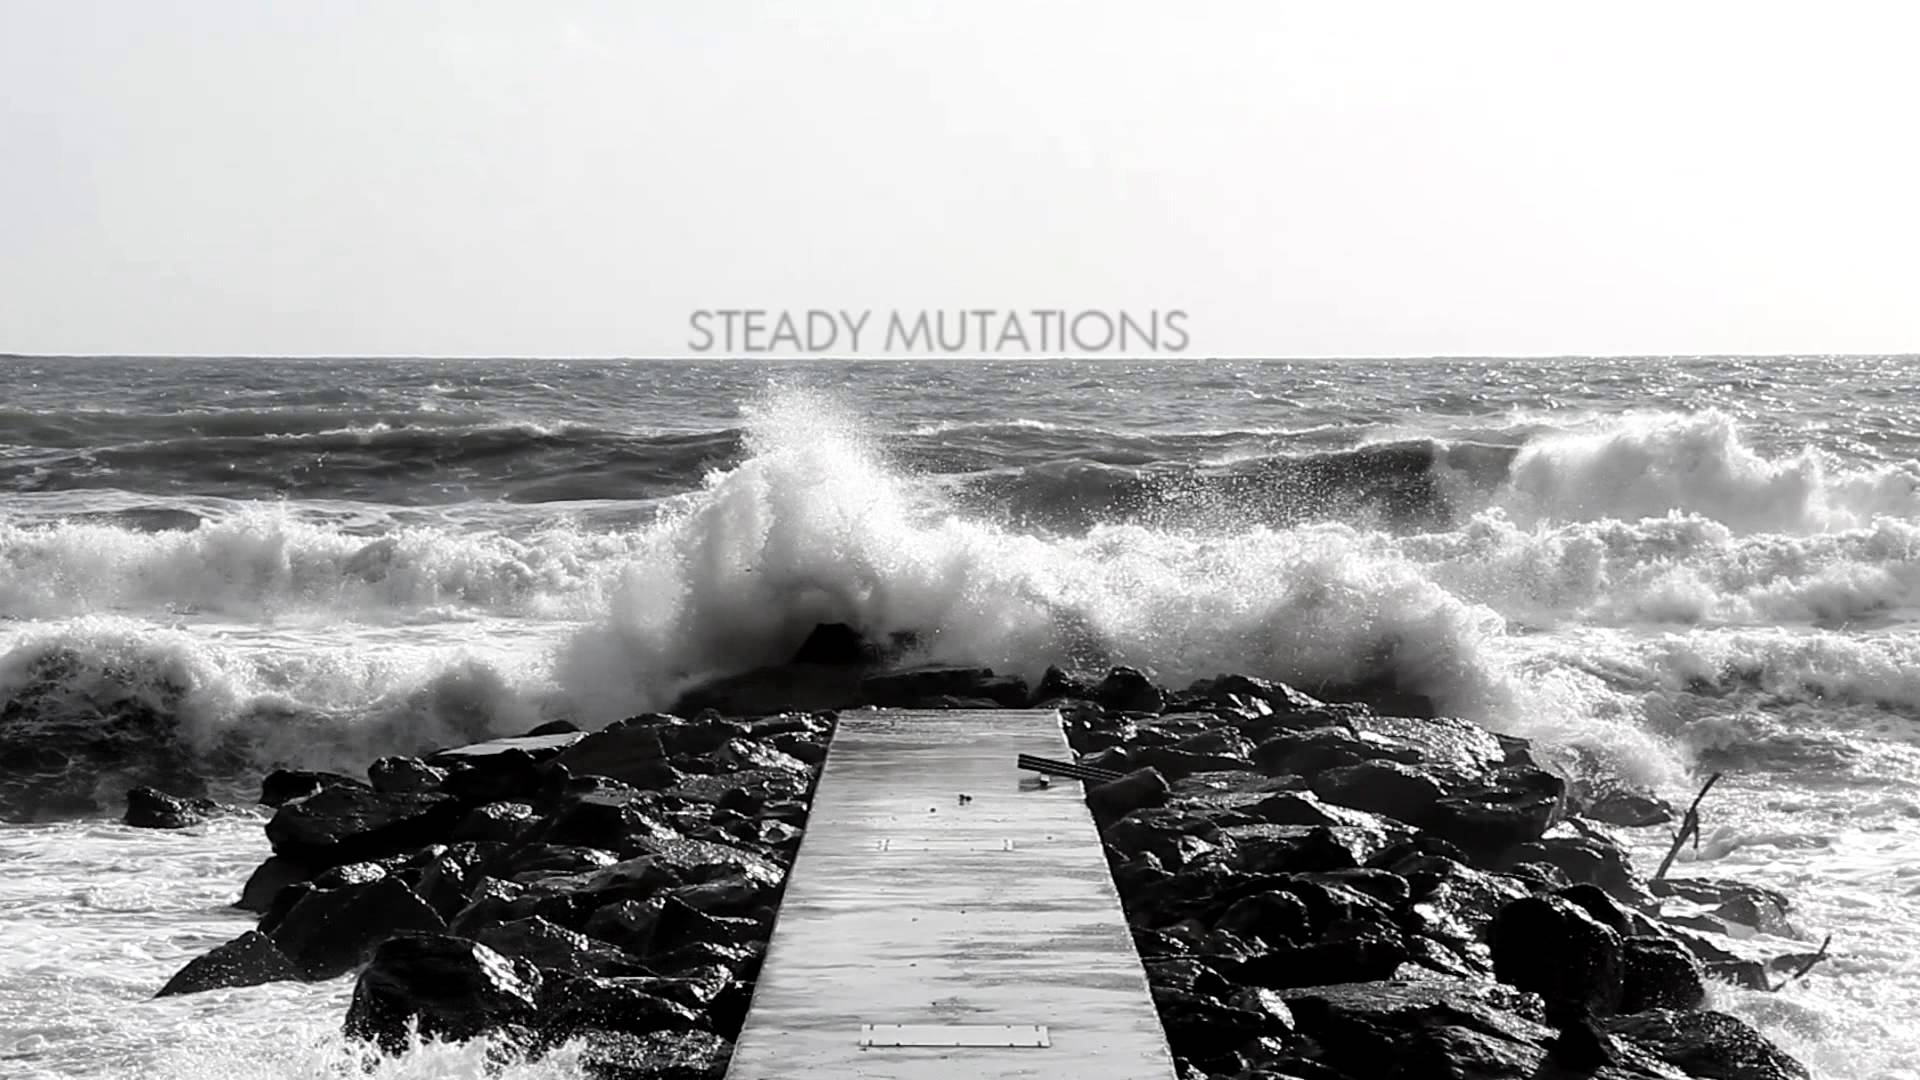 Andrea Presciuttini- Steady Mutations